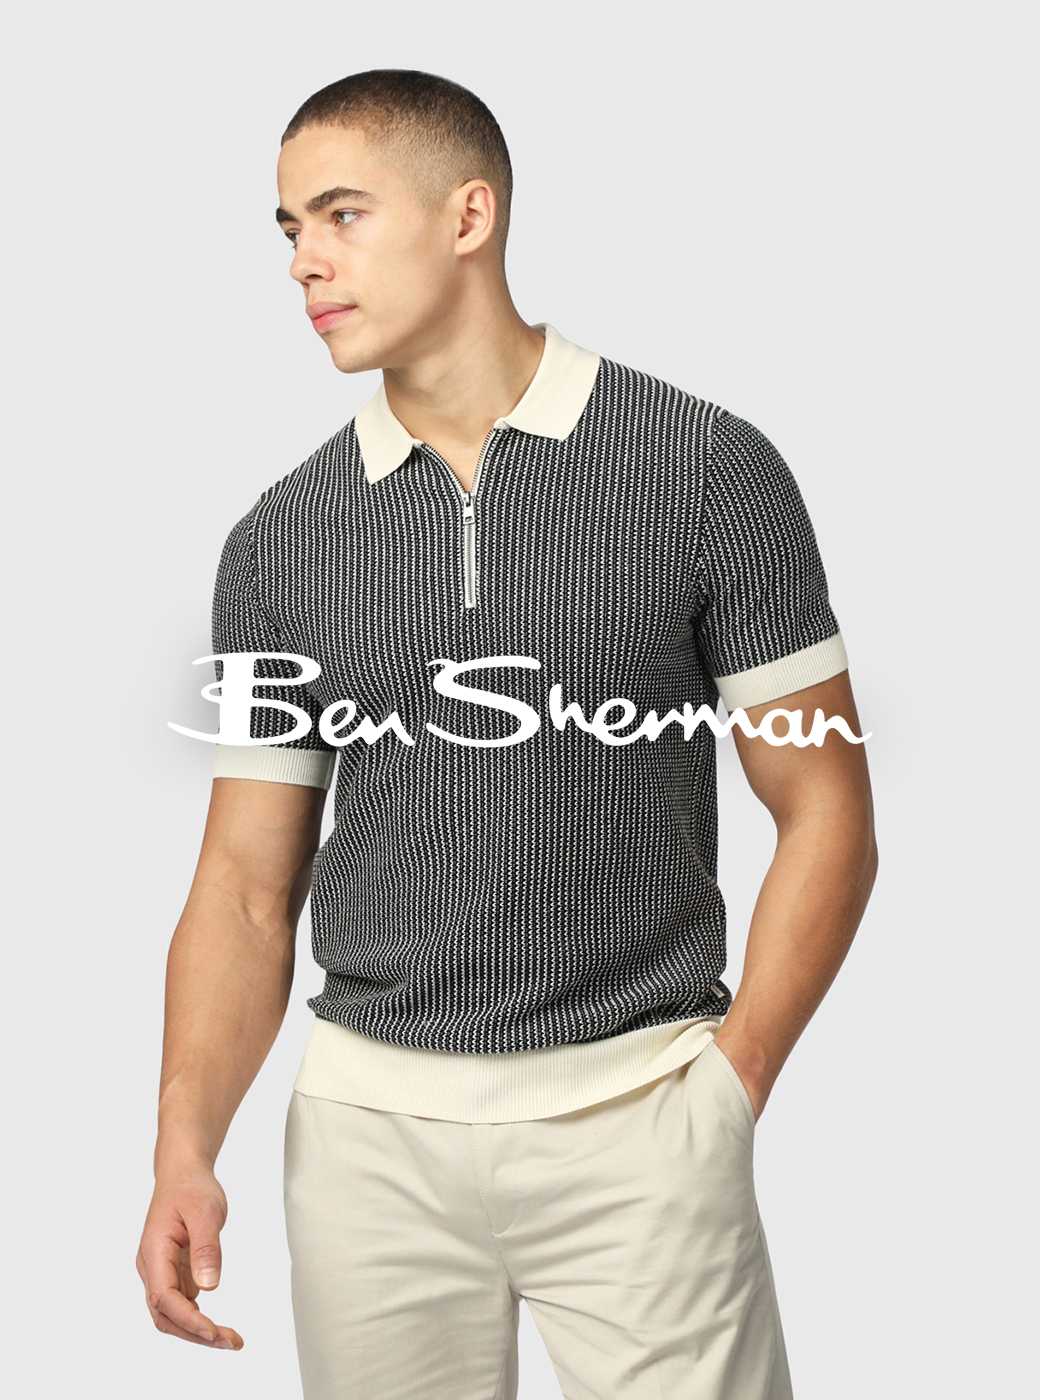 Ben Sherman. Shop now.